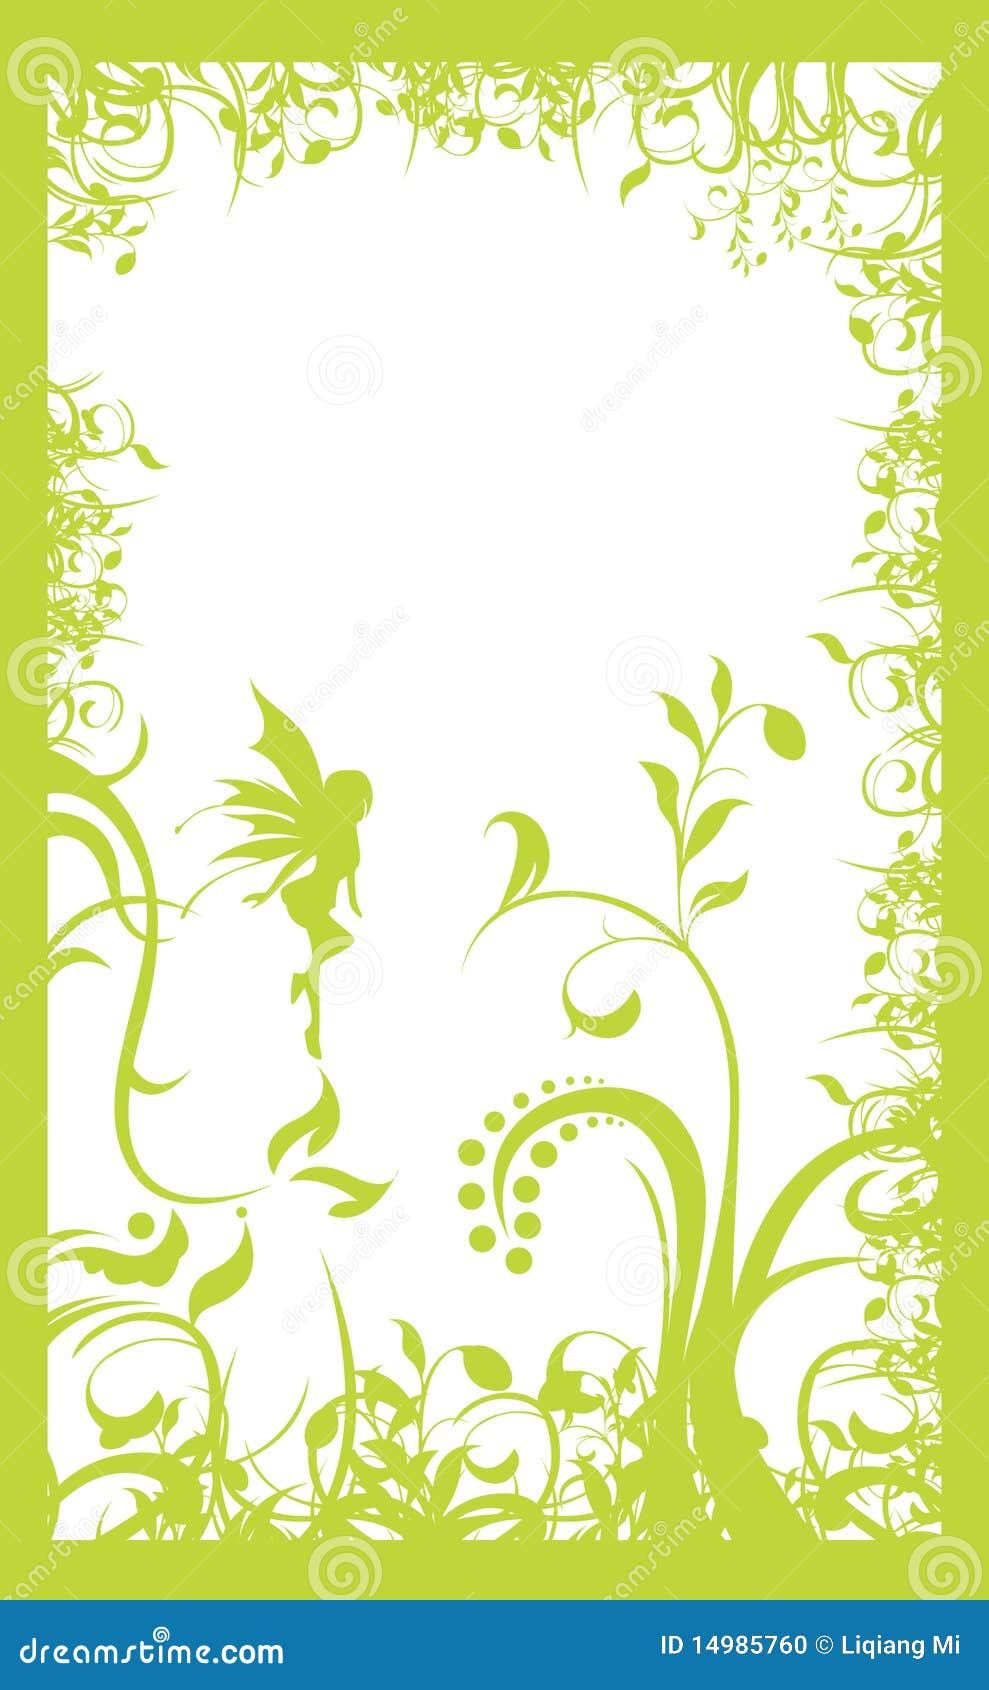 Light green frame stock vector. Illustration of rectangular - 14985760